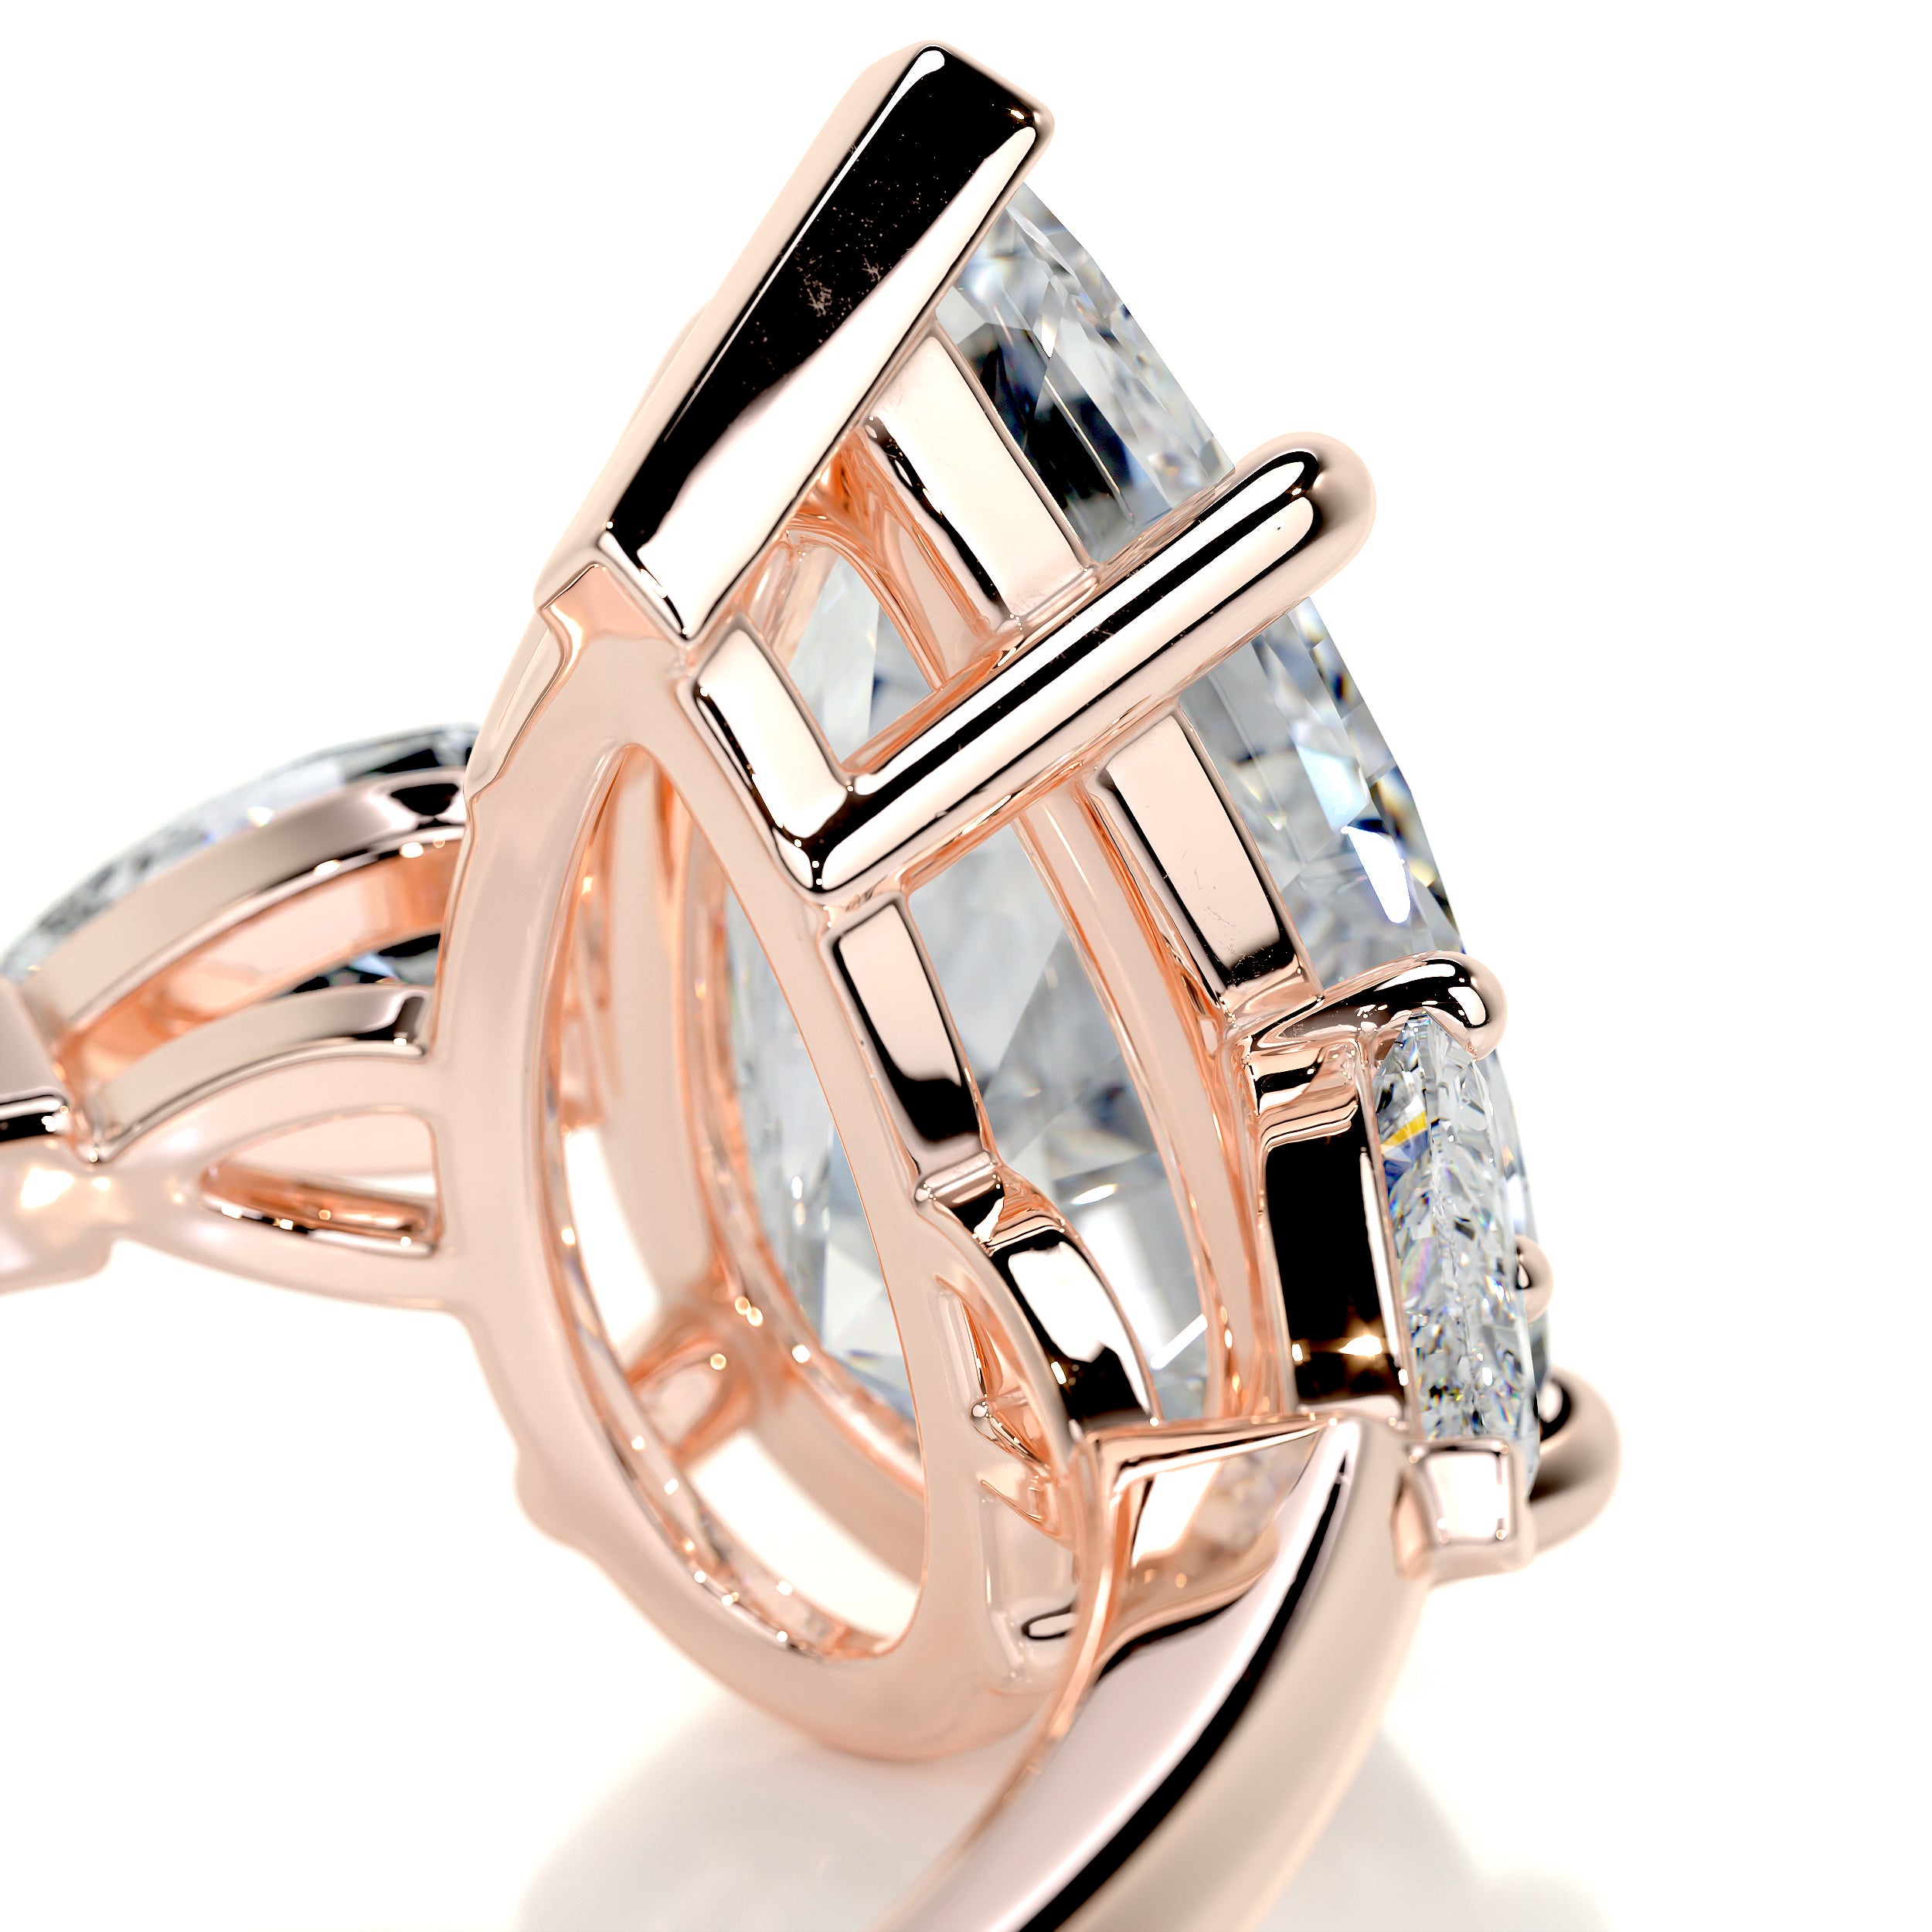 Kamala Diamond Engagement Ring   (5.5 Carat) -14K Rose Gold